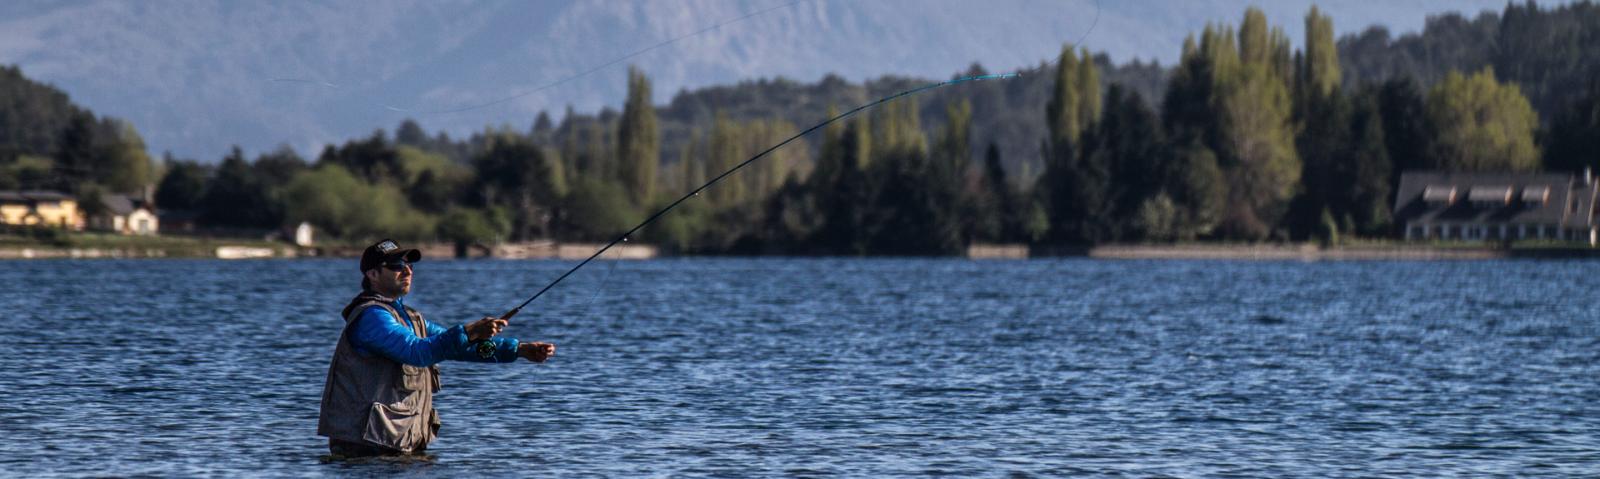 Pesca deportiva - Bariloche